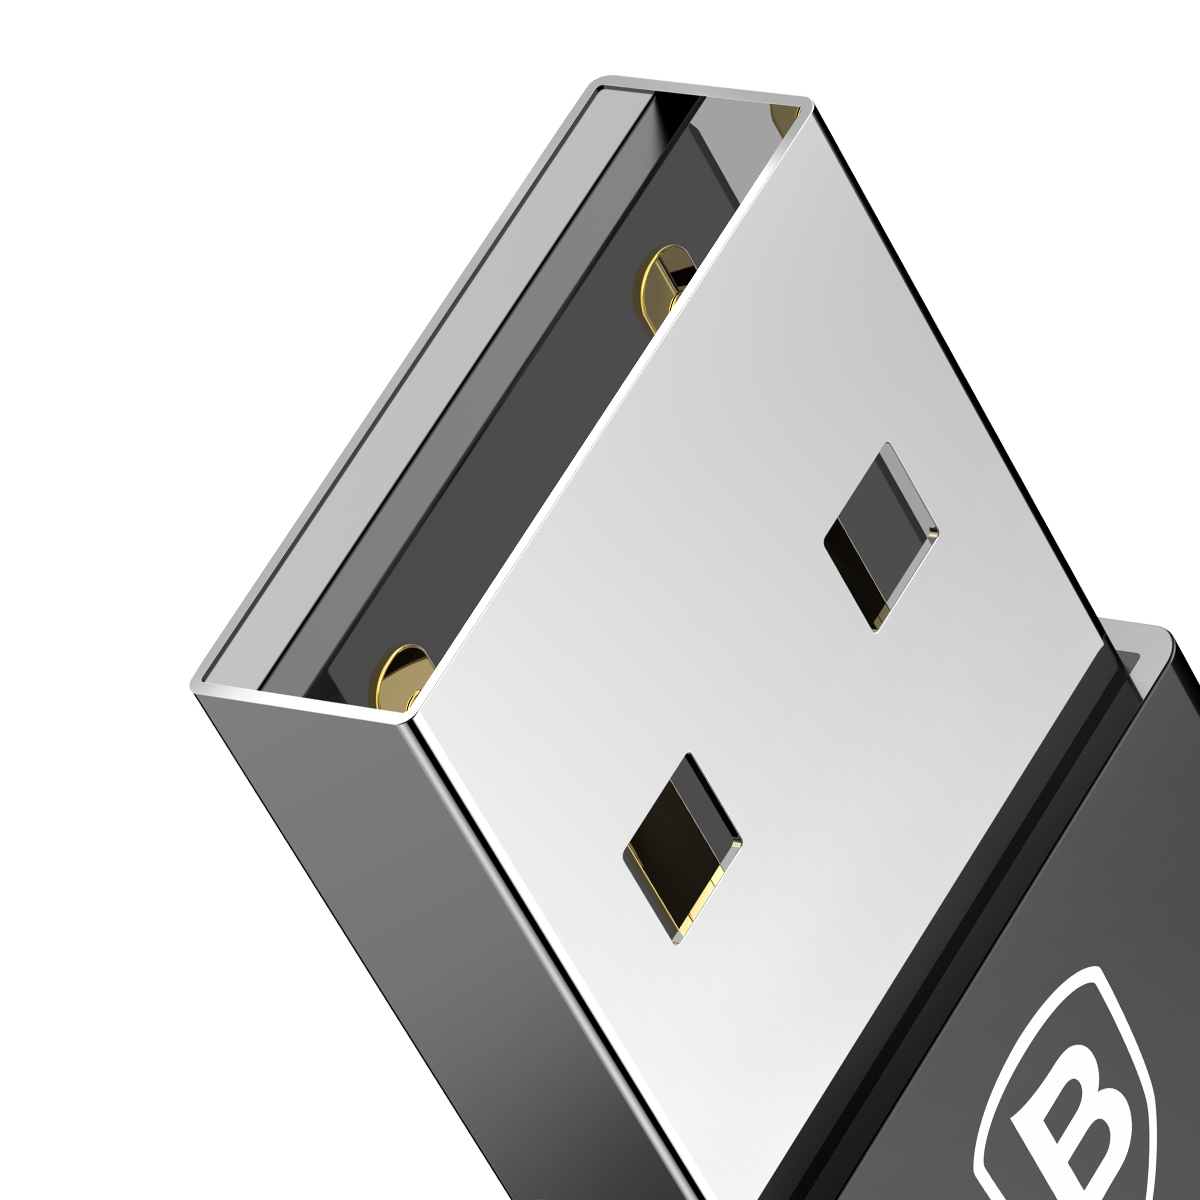 Adaptador Conversor Baseus USB Macho para Tipo-C Fêmea